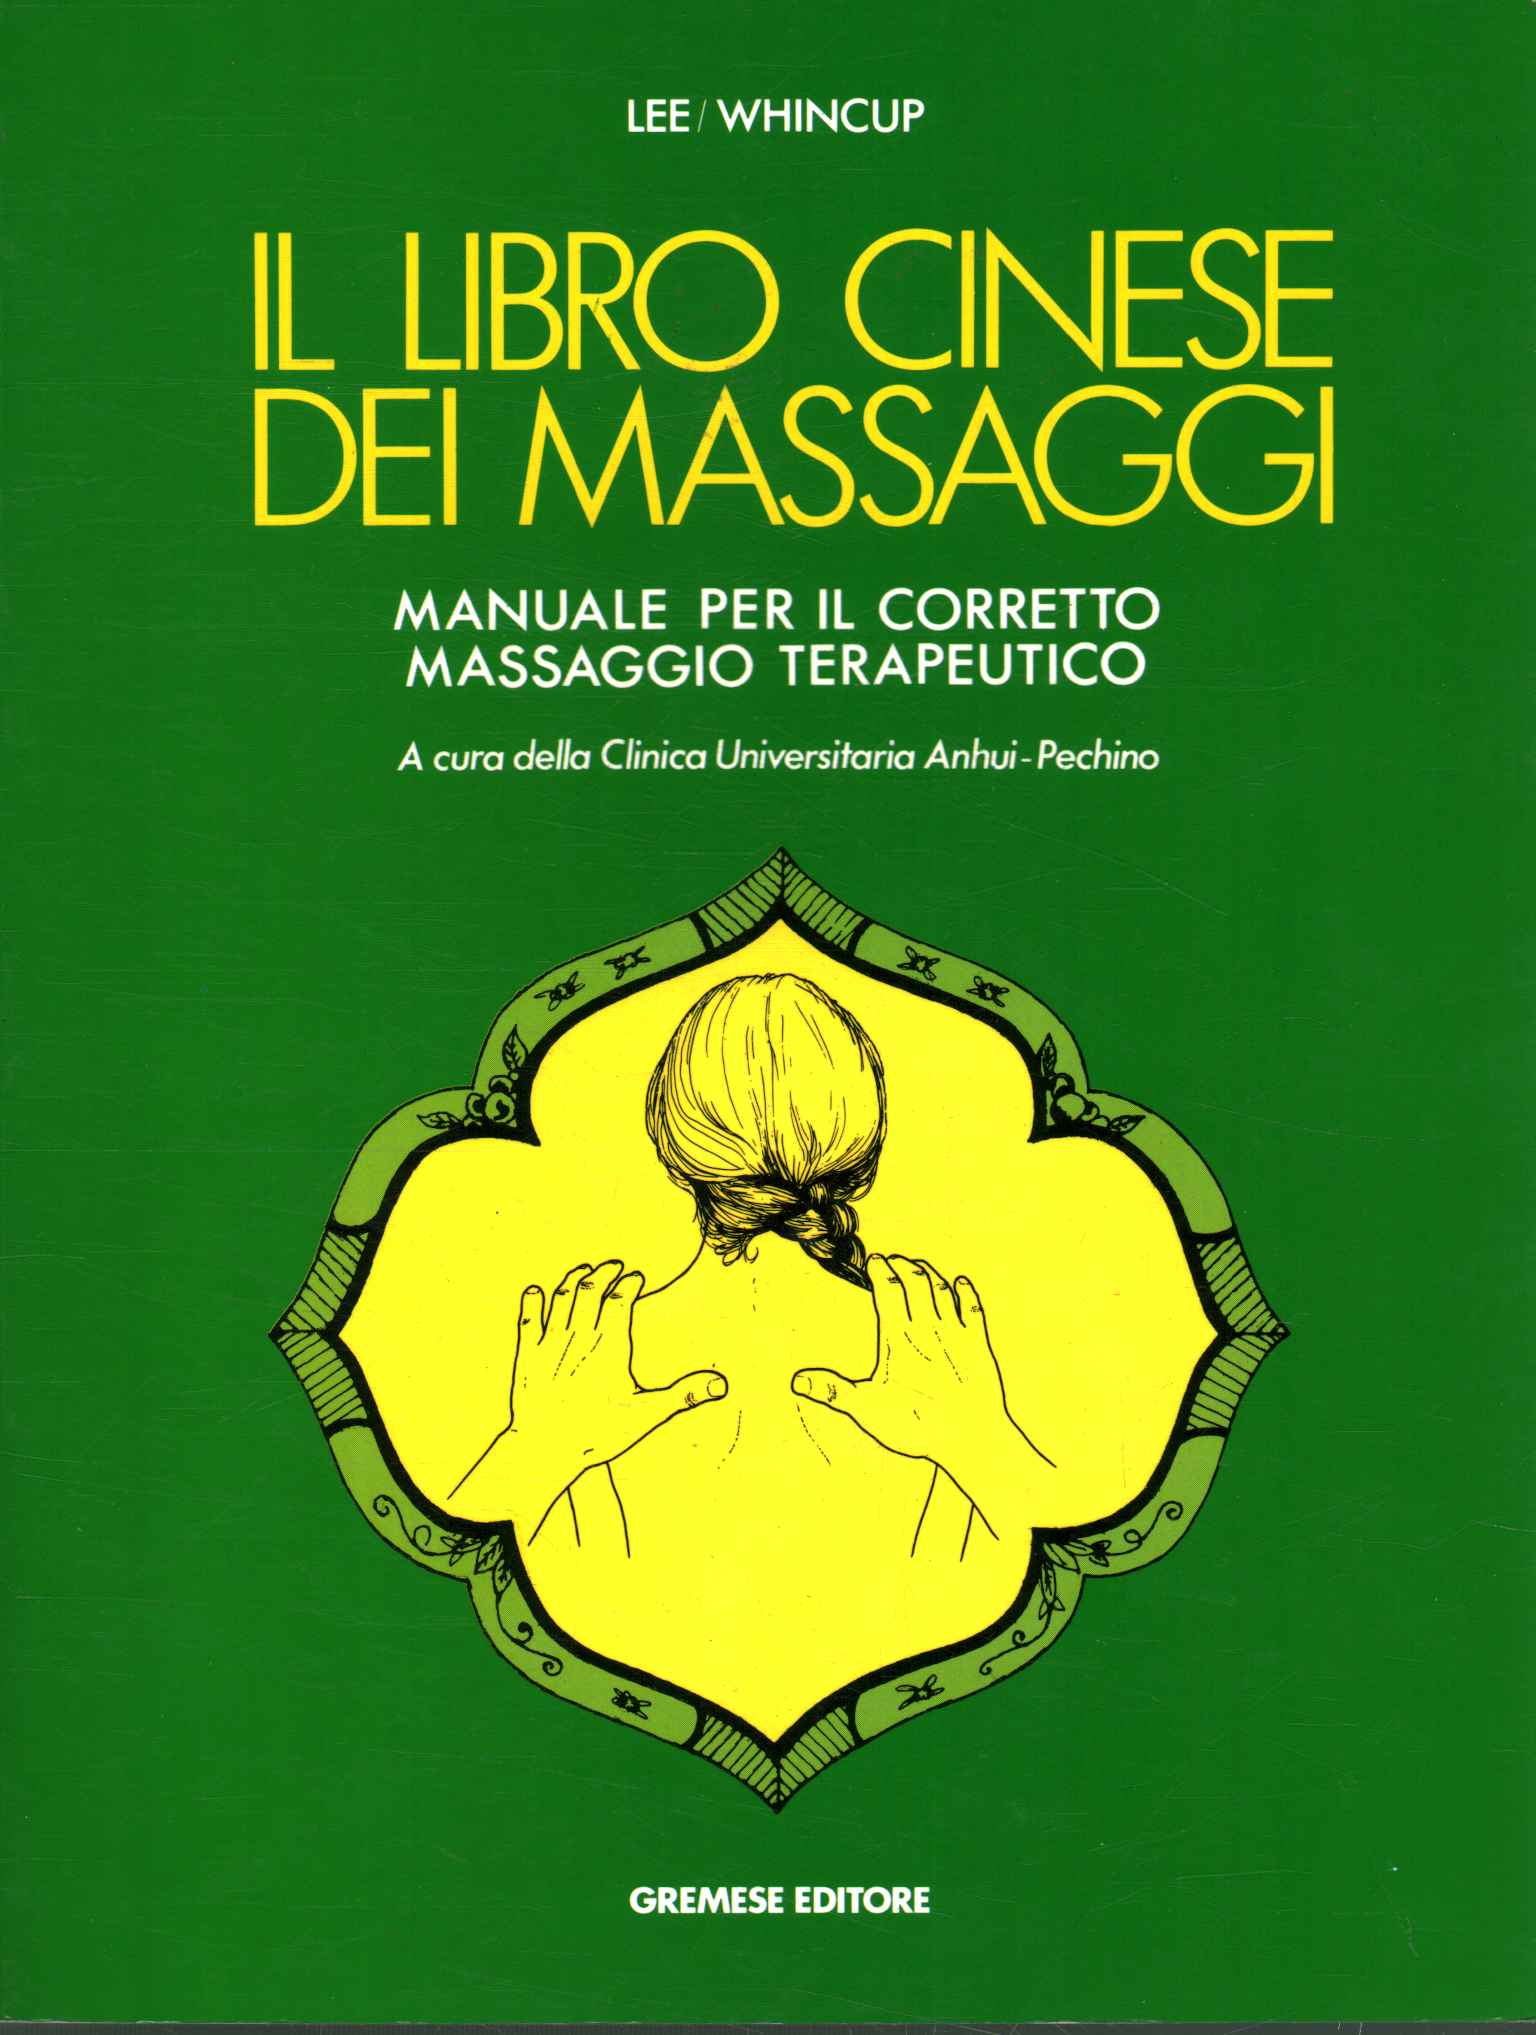 Das chinesische Massagebuch